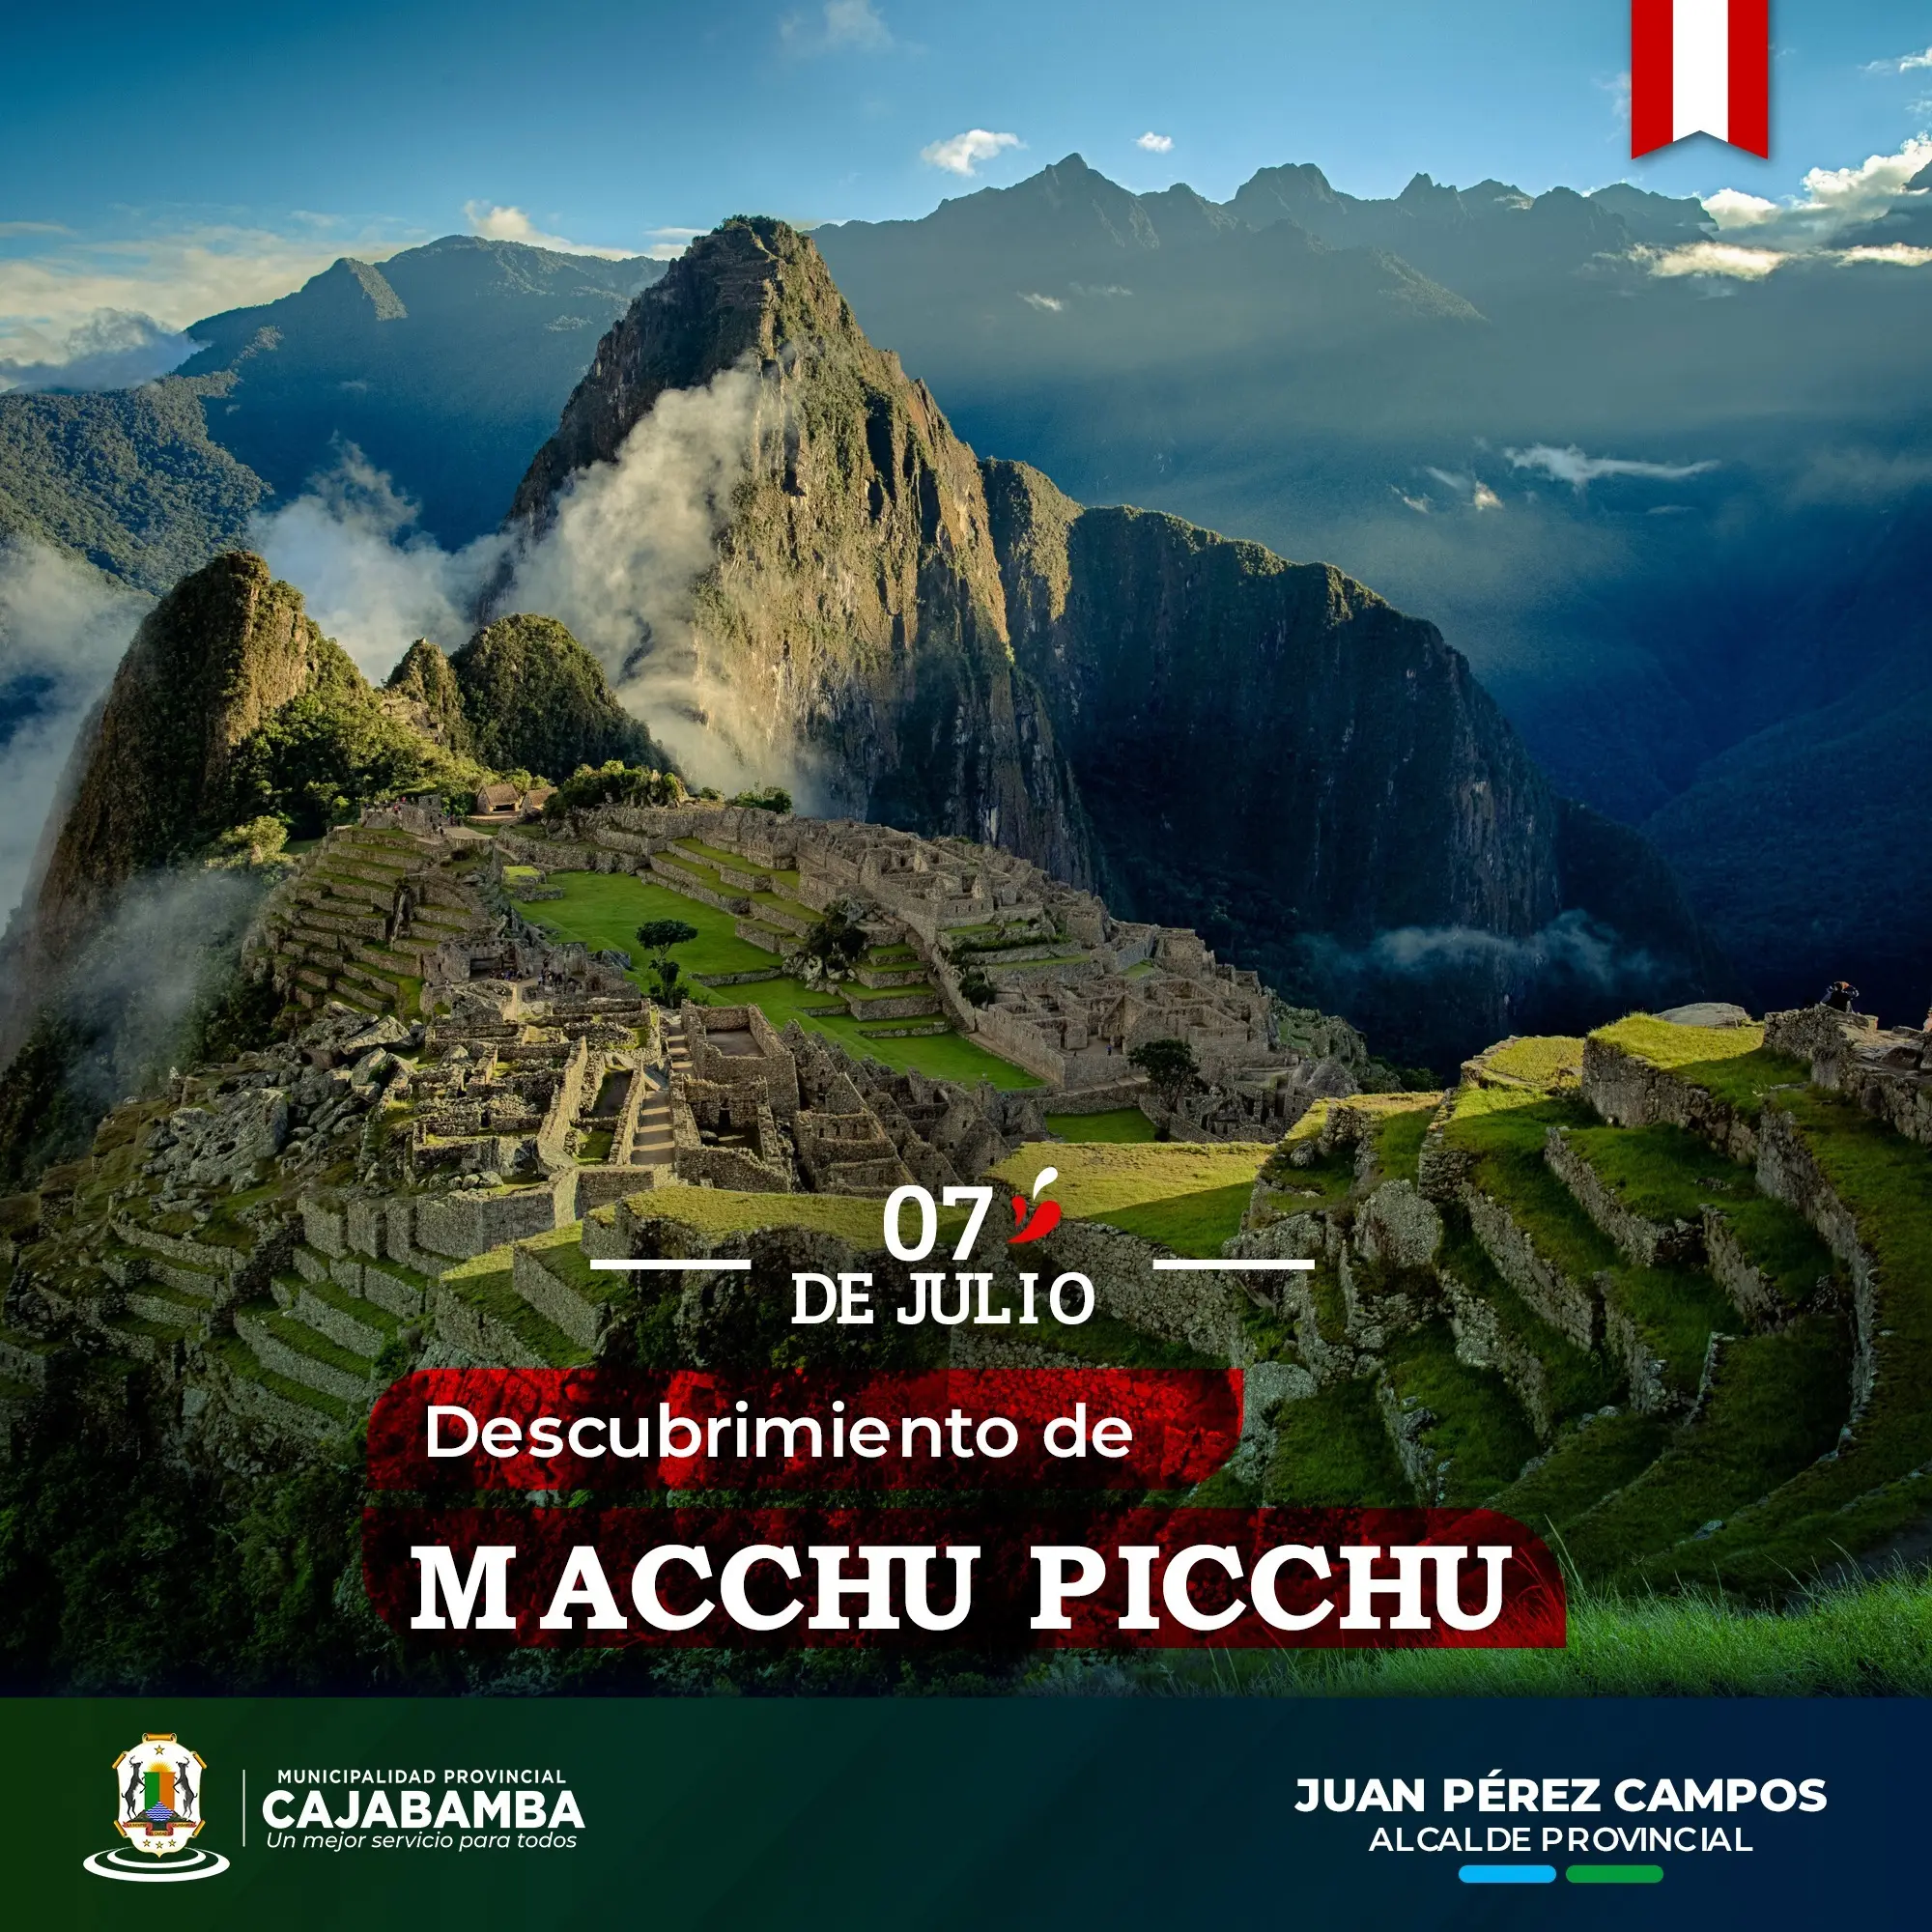 el descubrimiento de machu picchu resumen - Cómo fue el descubrimiento de Machu Picchu